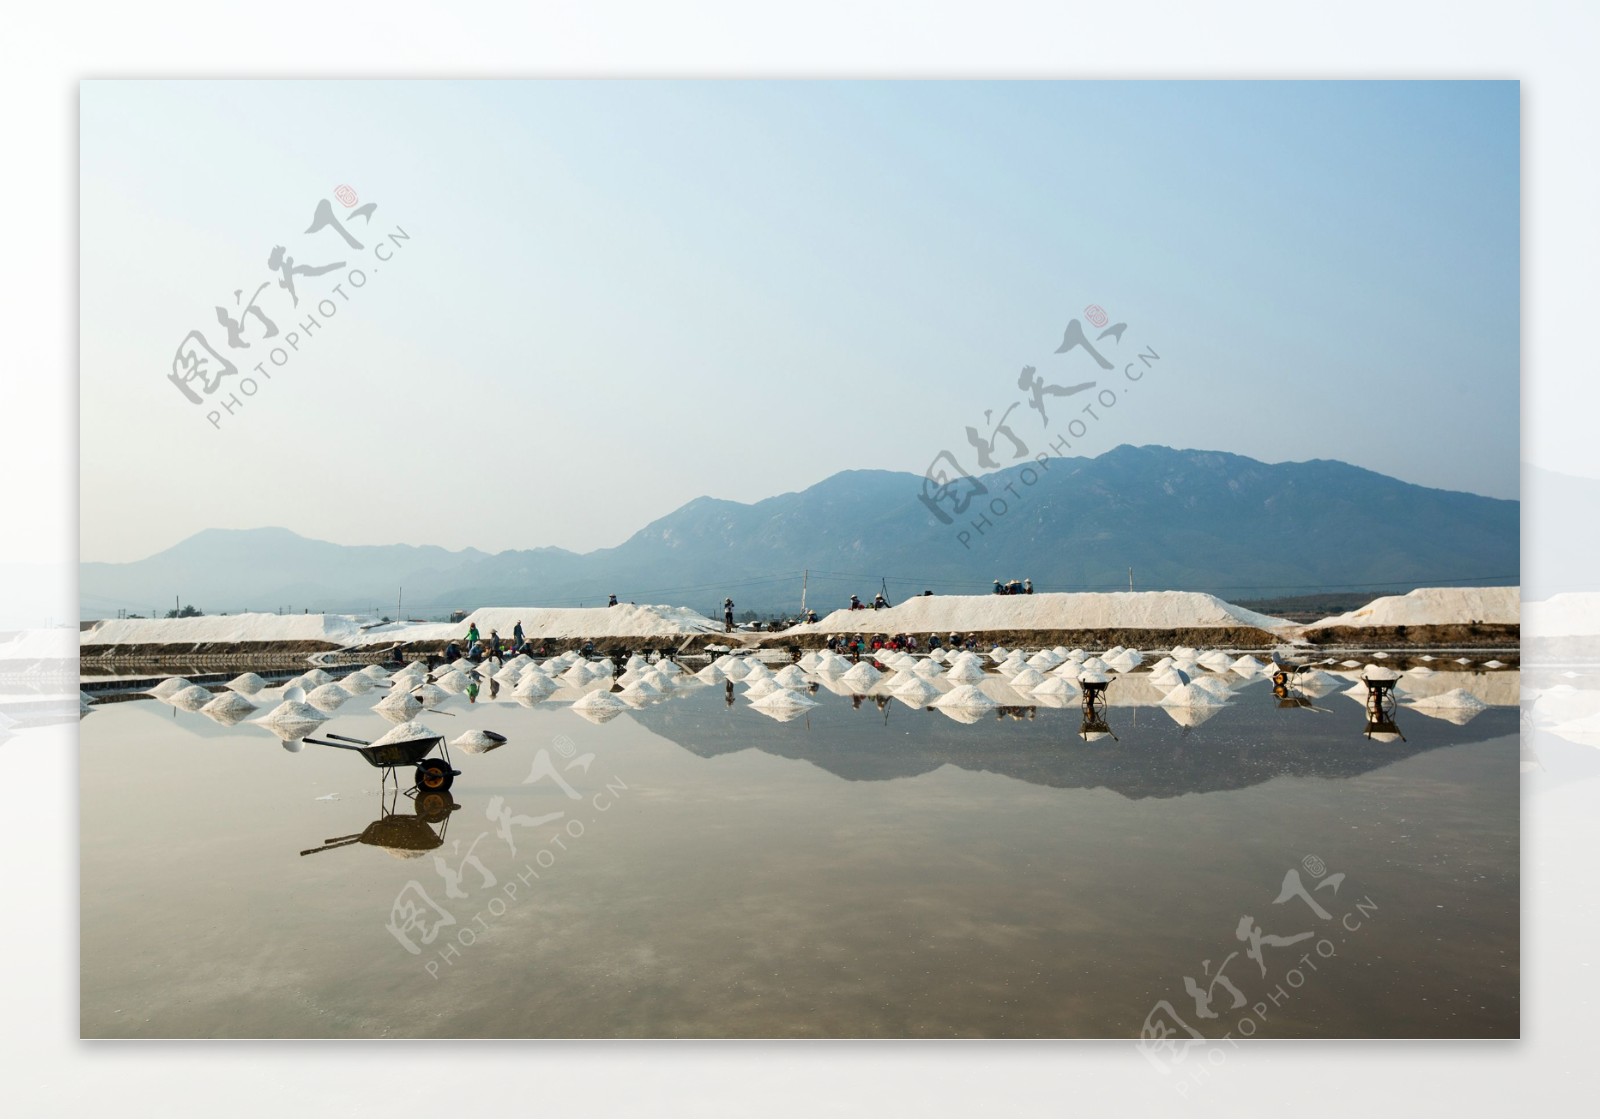 越南的盐滩图片